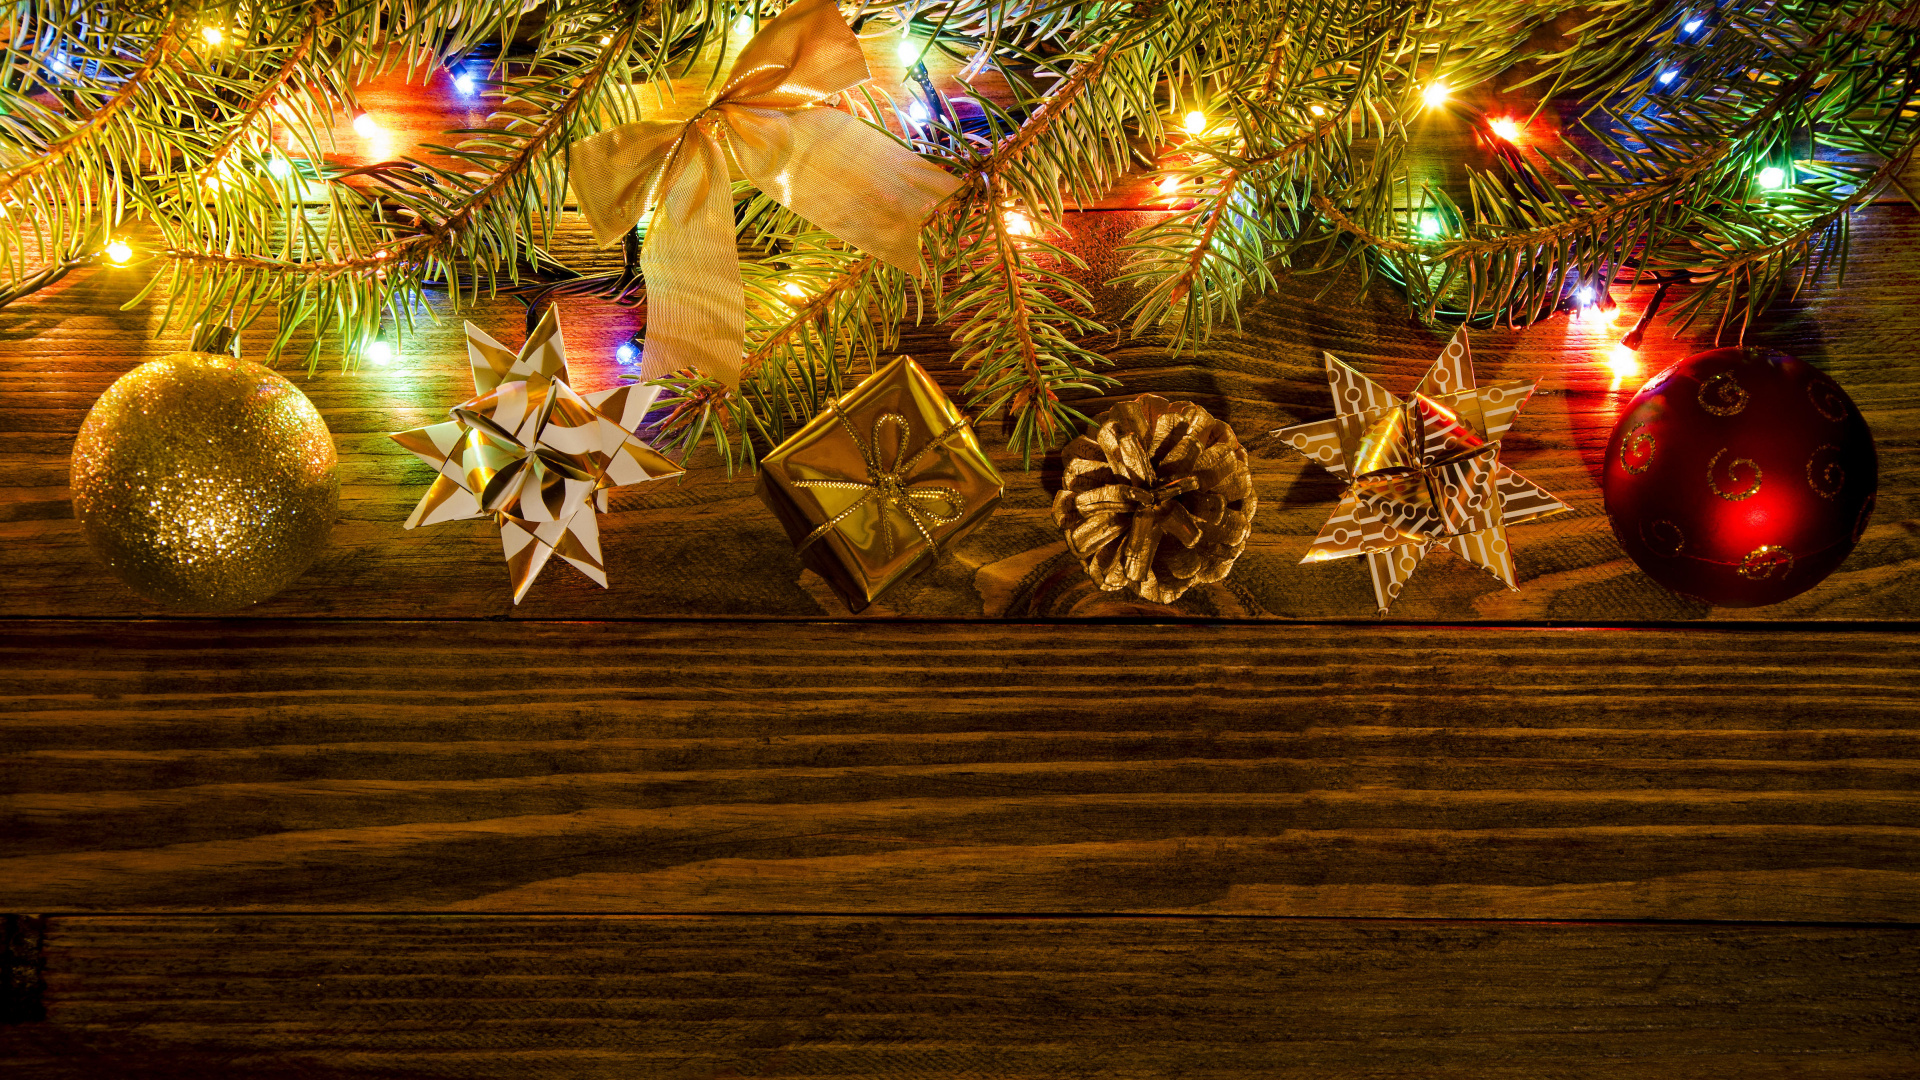 Neujahr, Weihnachten, Baum, Weihnachtsdekoration, Weihnachtsbeleuchtung. Wallpaper in 1920x1080 Resolution